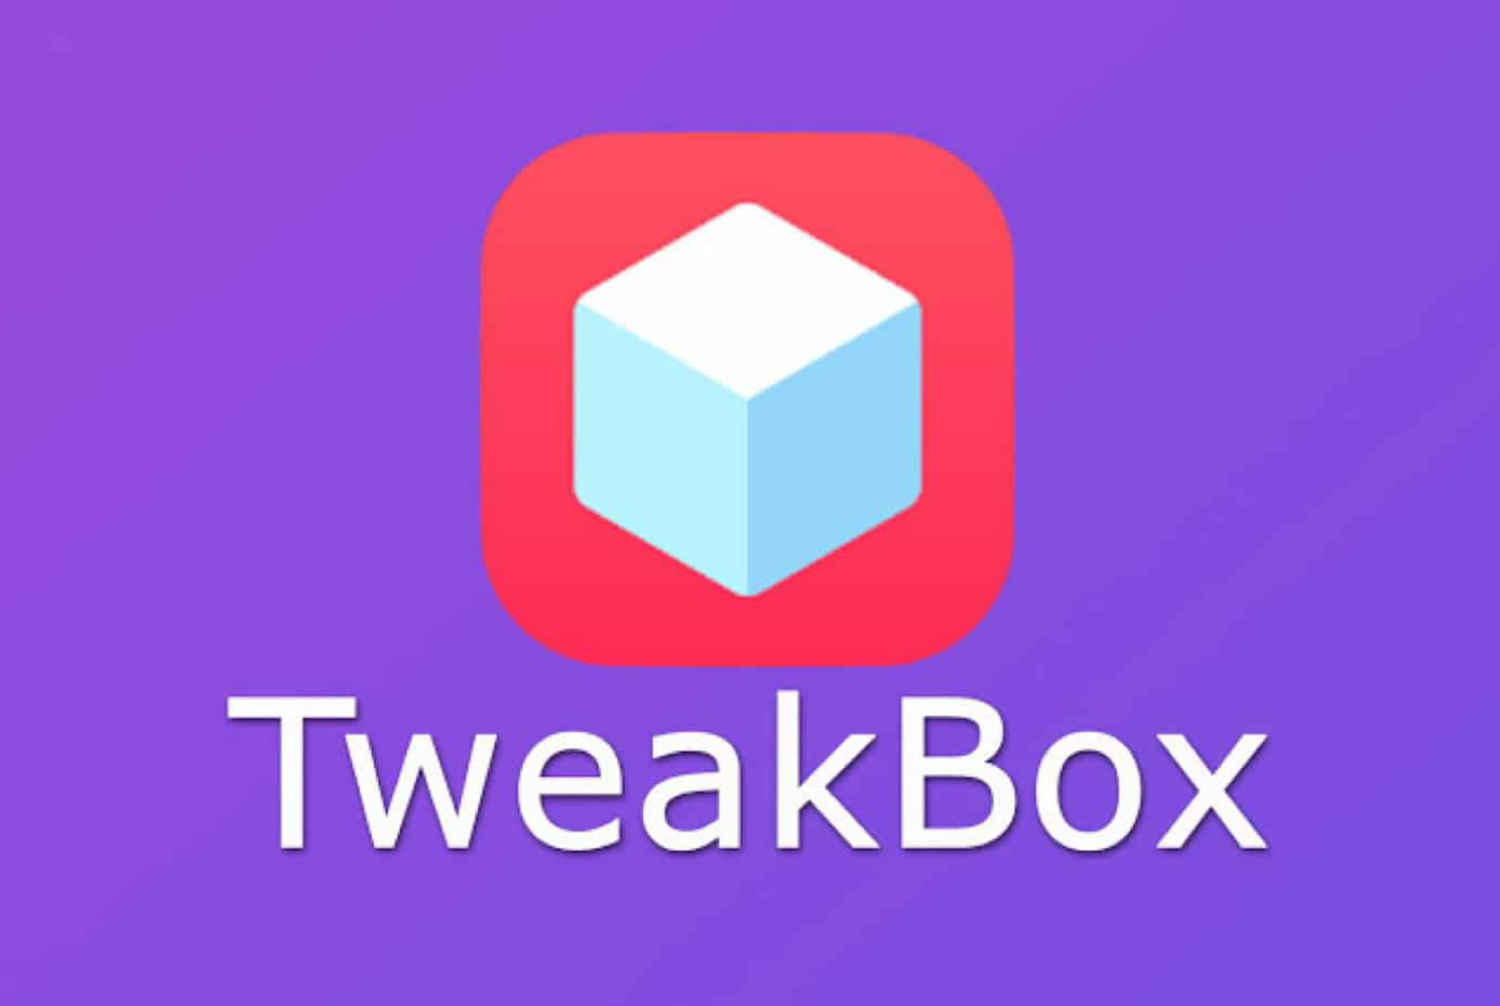 tweakbox is risk-free